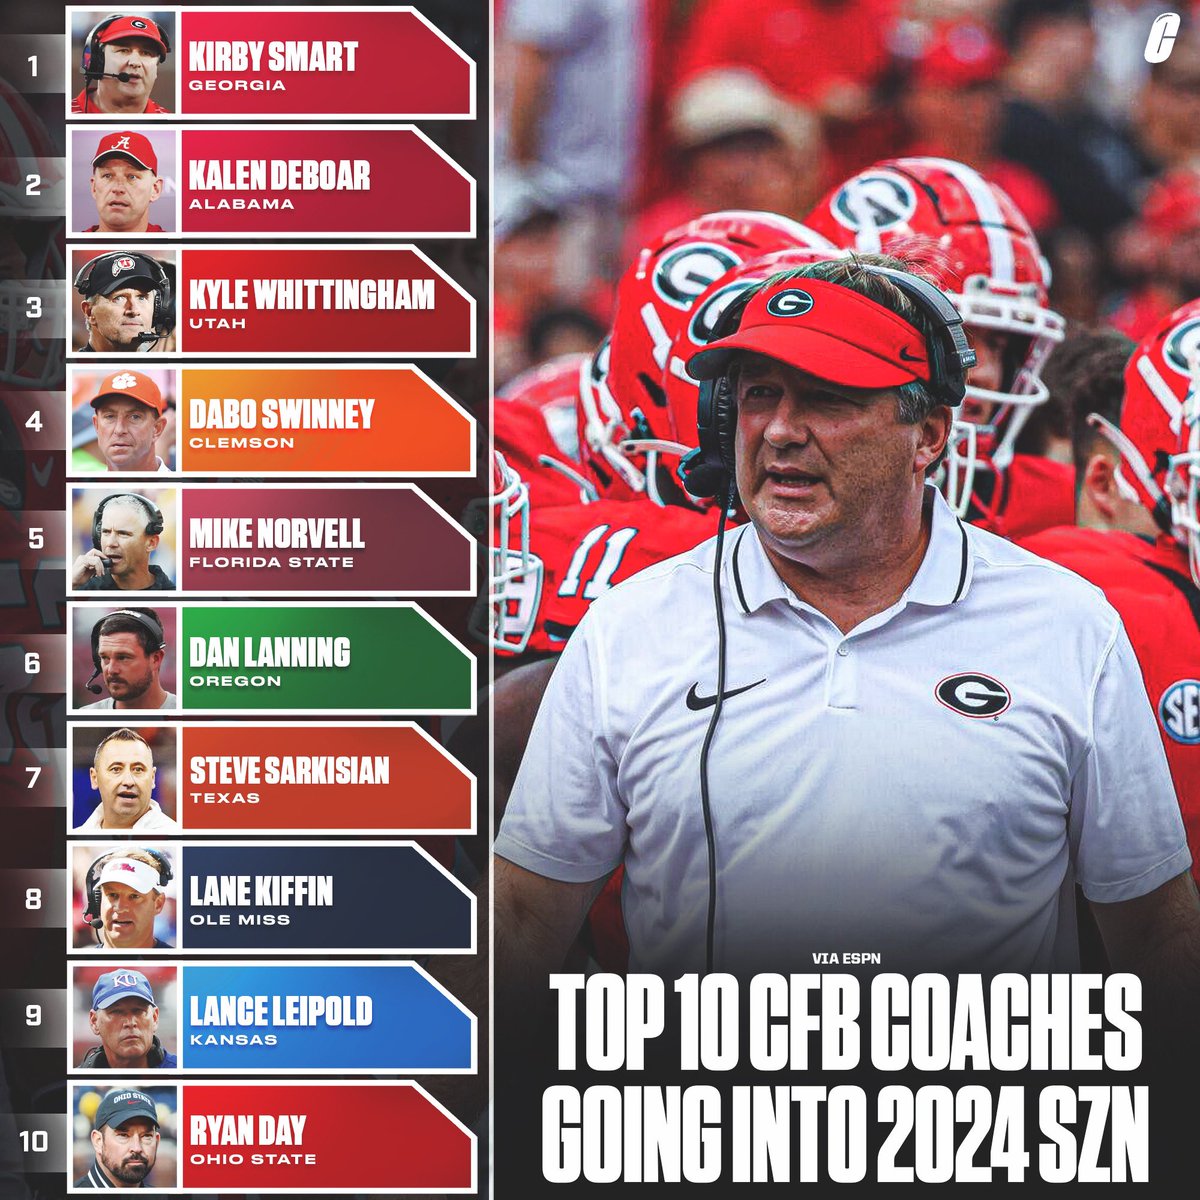 Top ten college football coaches heading into the 2024 season per ESPN. 👀